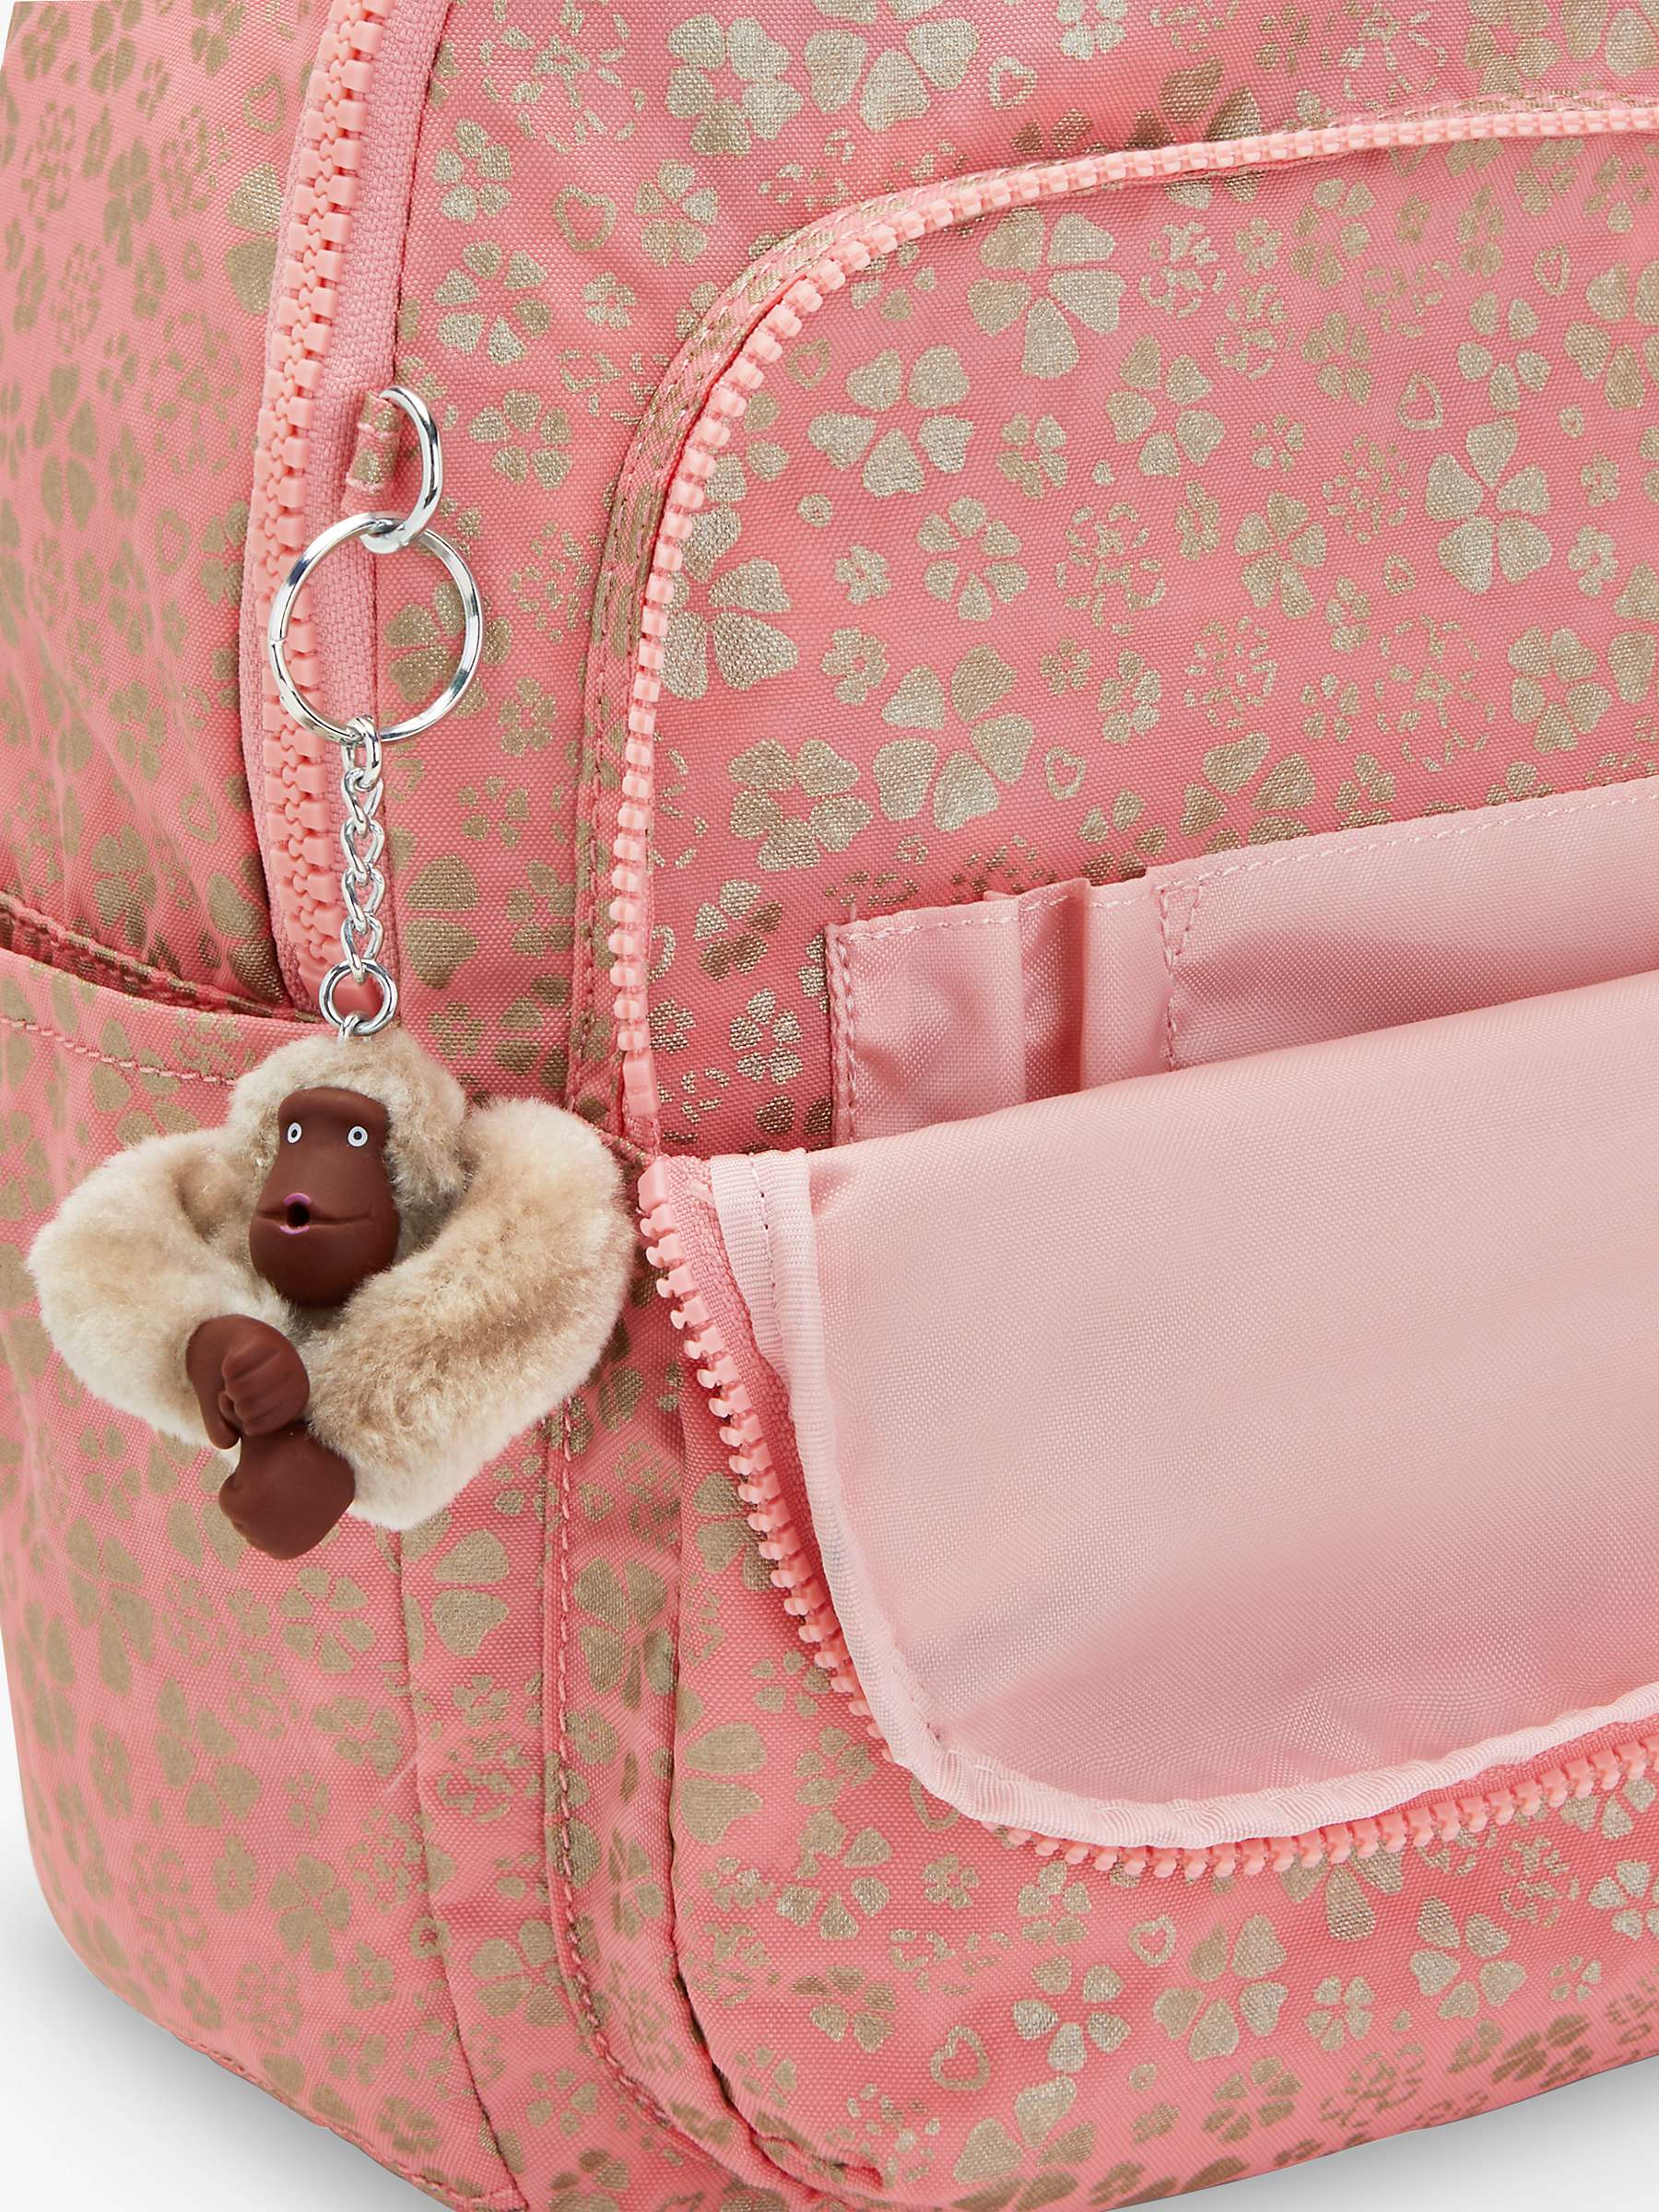 Buy Kipling Seoul Small Backpack, Sweet MetFloral Online at johnlewis.com